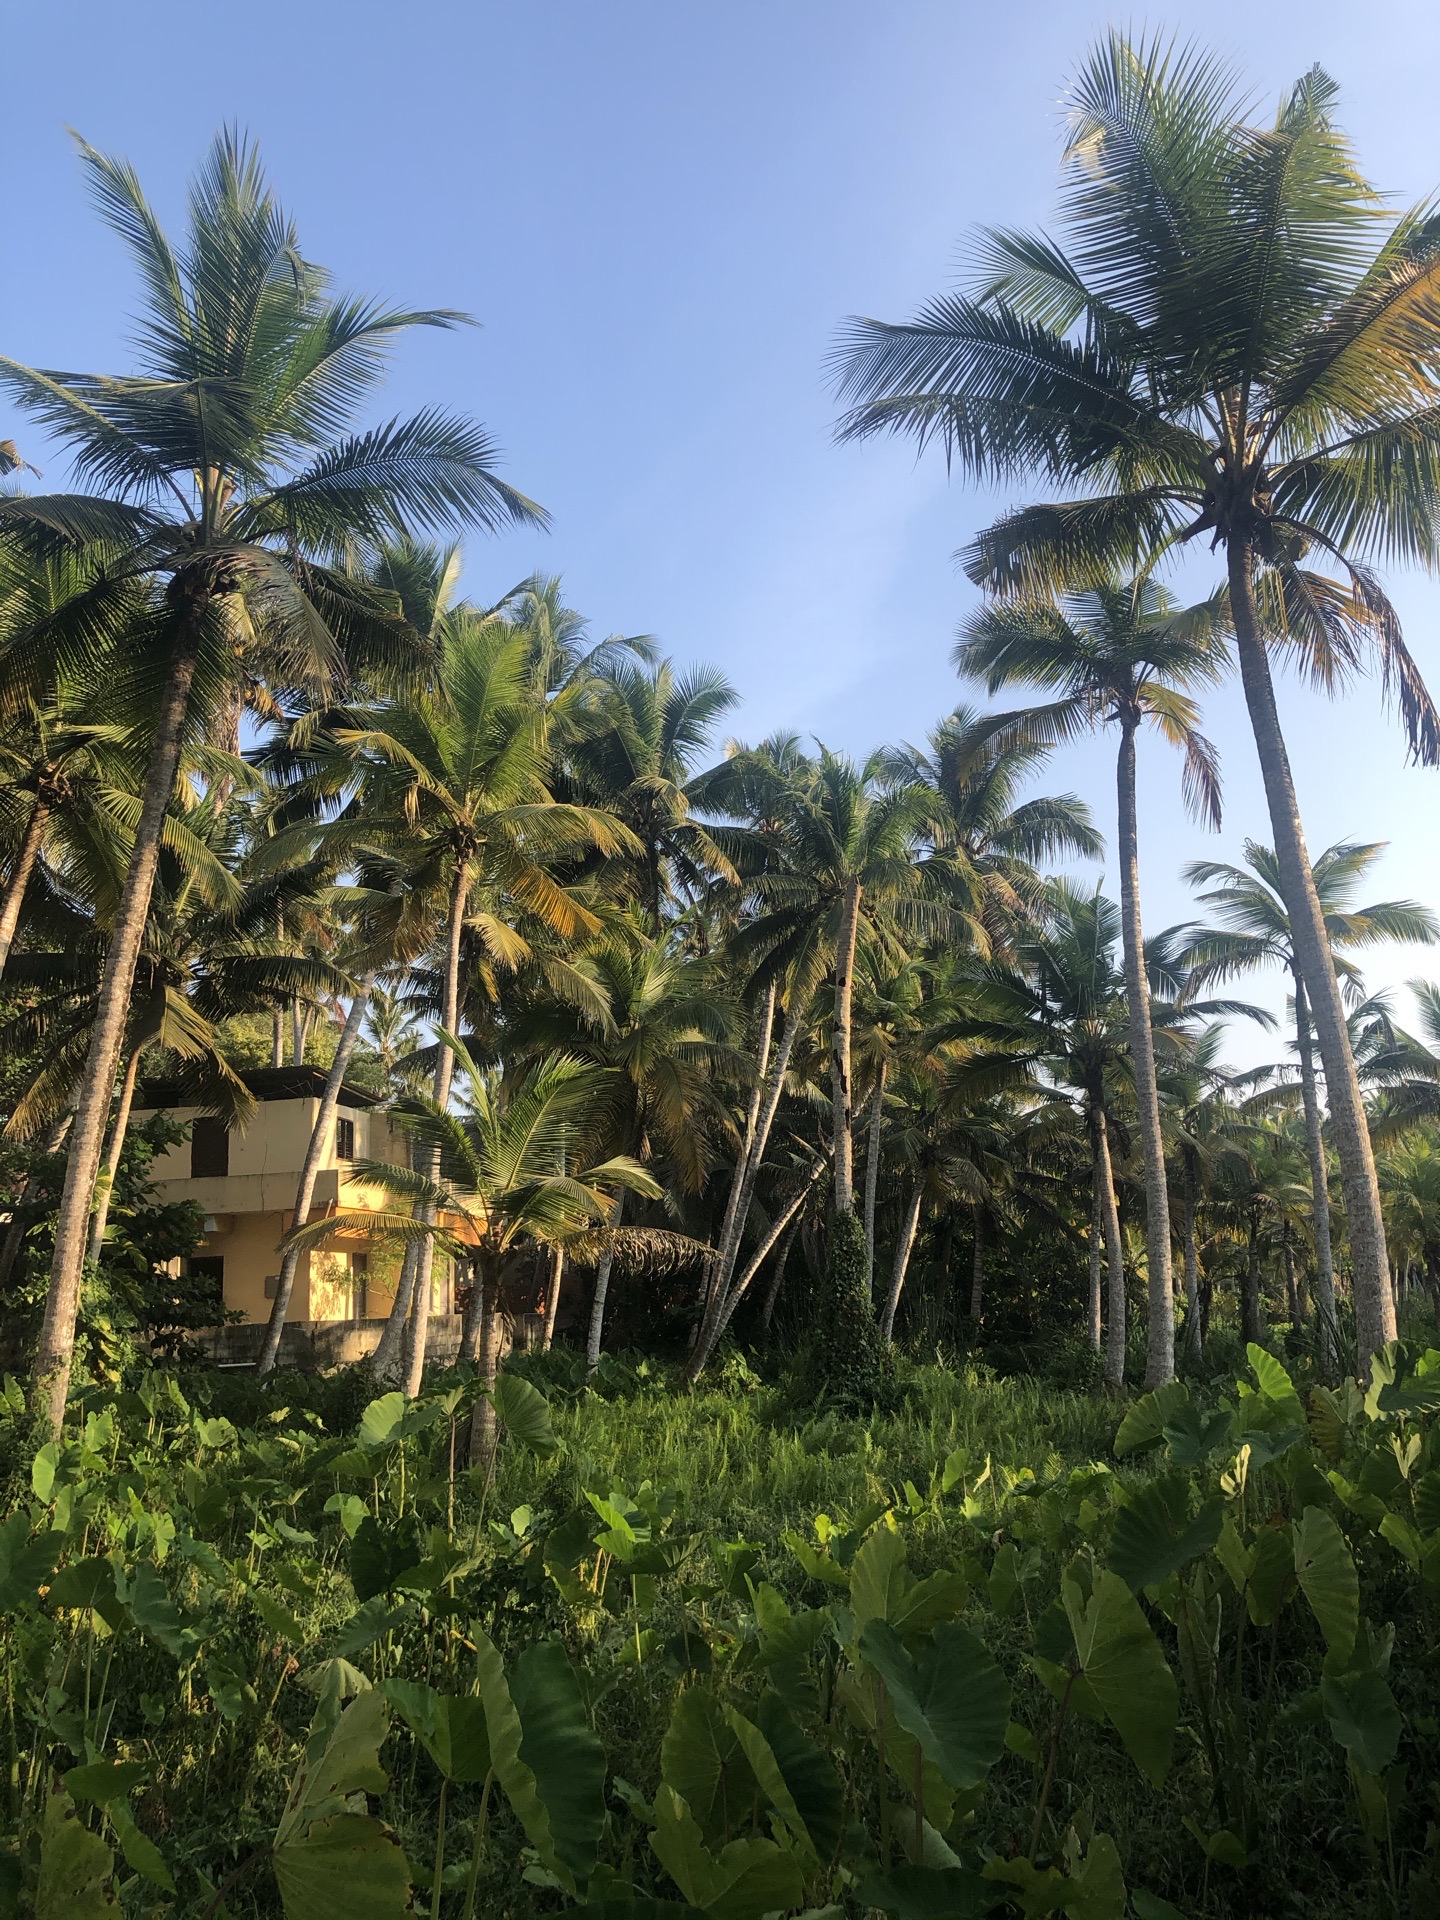 生态环境非常好，满满都是椰子林，在这里可以待上十天半个月的时间。修心养性。